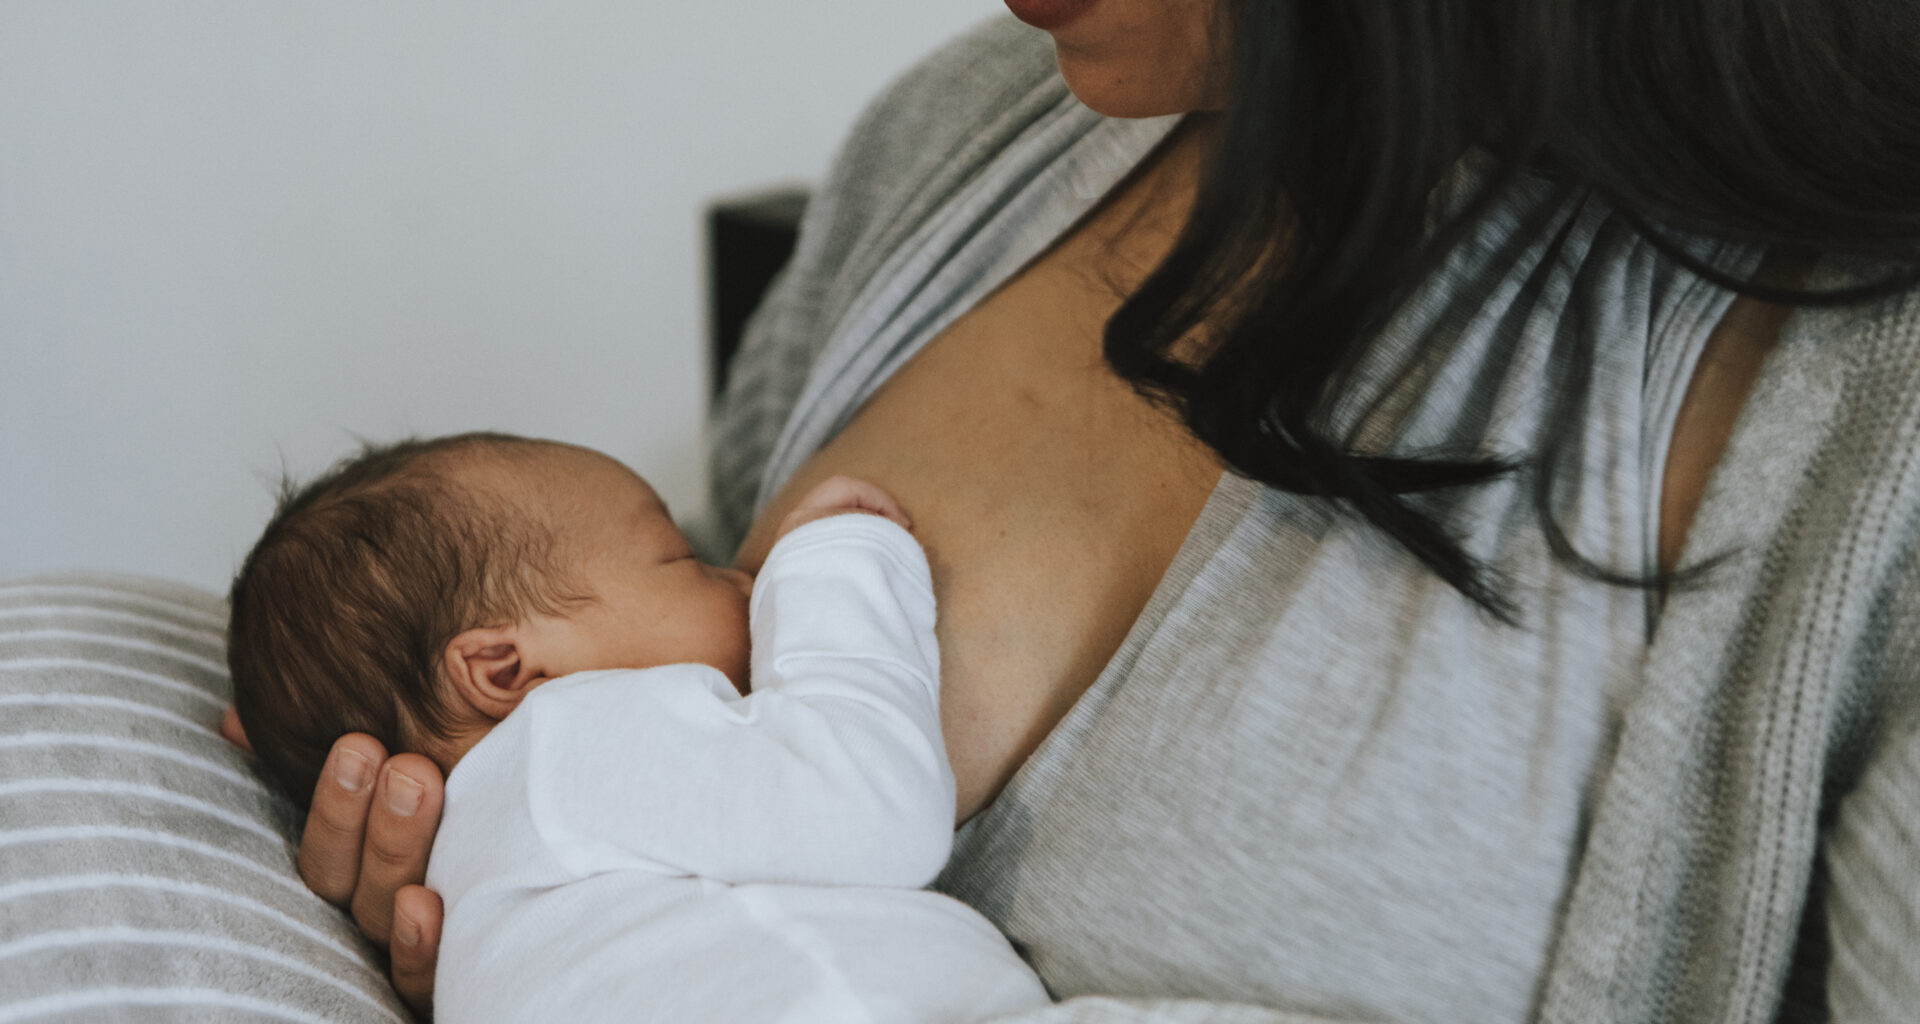 breastfeeding as birth control, breastfeeding natural birth control, breastfeeding and fertility awareness, lactational amenorrhea method, LAM, exclusive breastfeeding, ecological breastfeeding, EBF